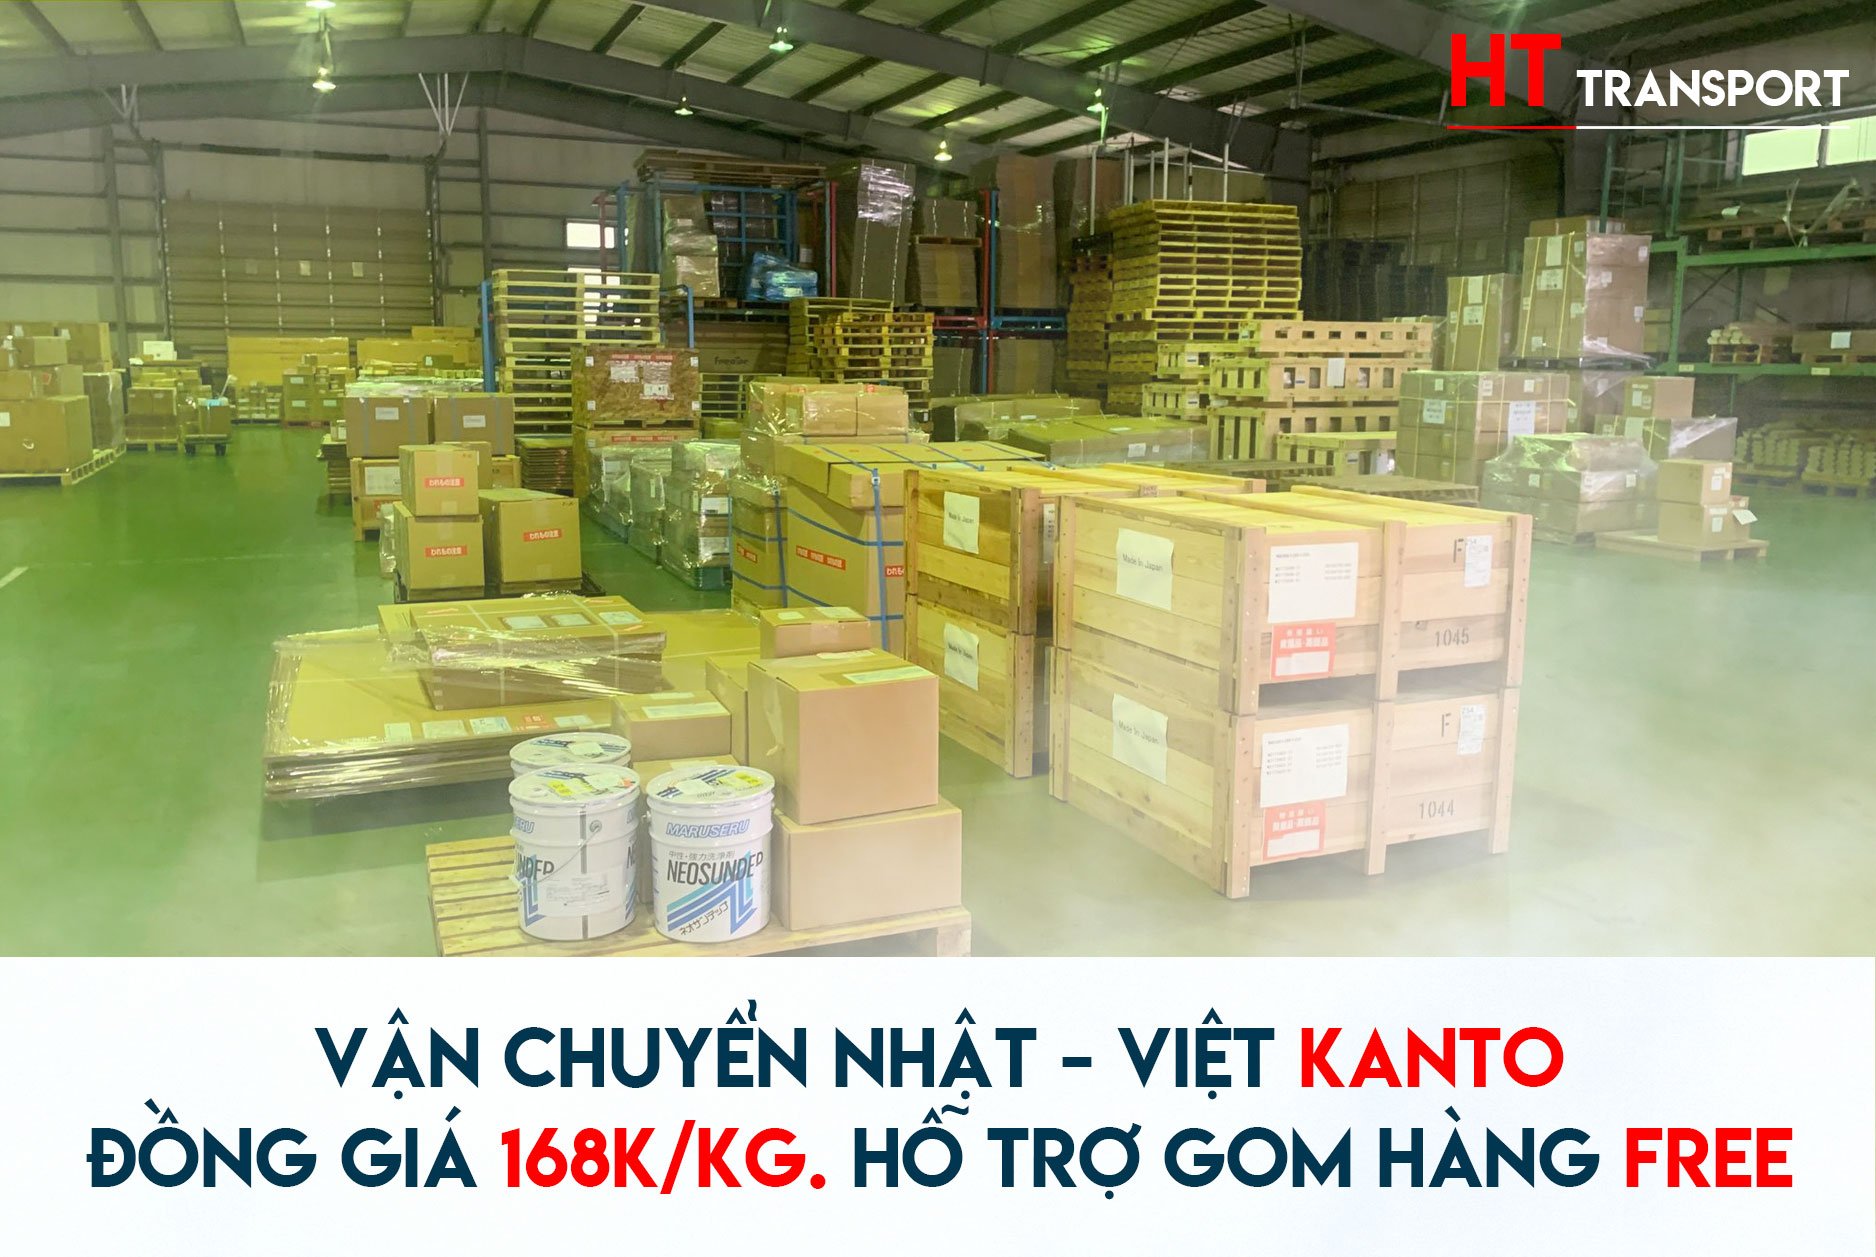 HT Transport vận chuyển hàng hoá Nhật - Việt 3 tiện ích